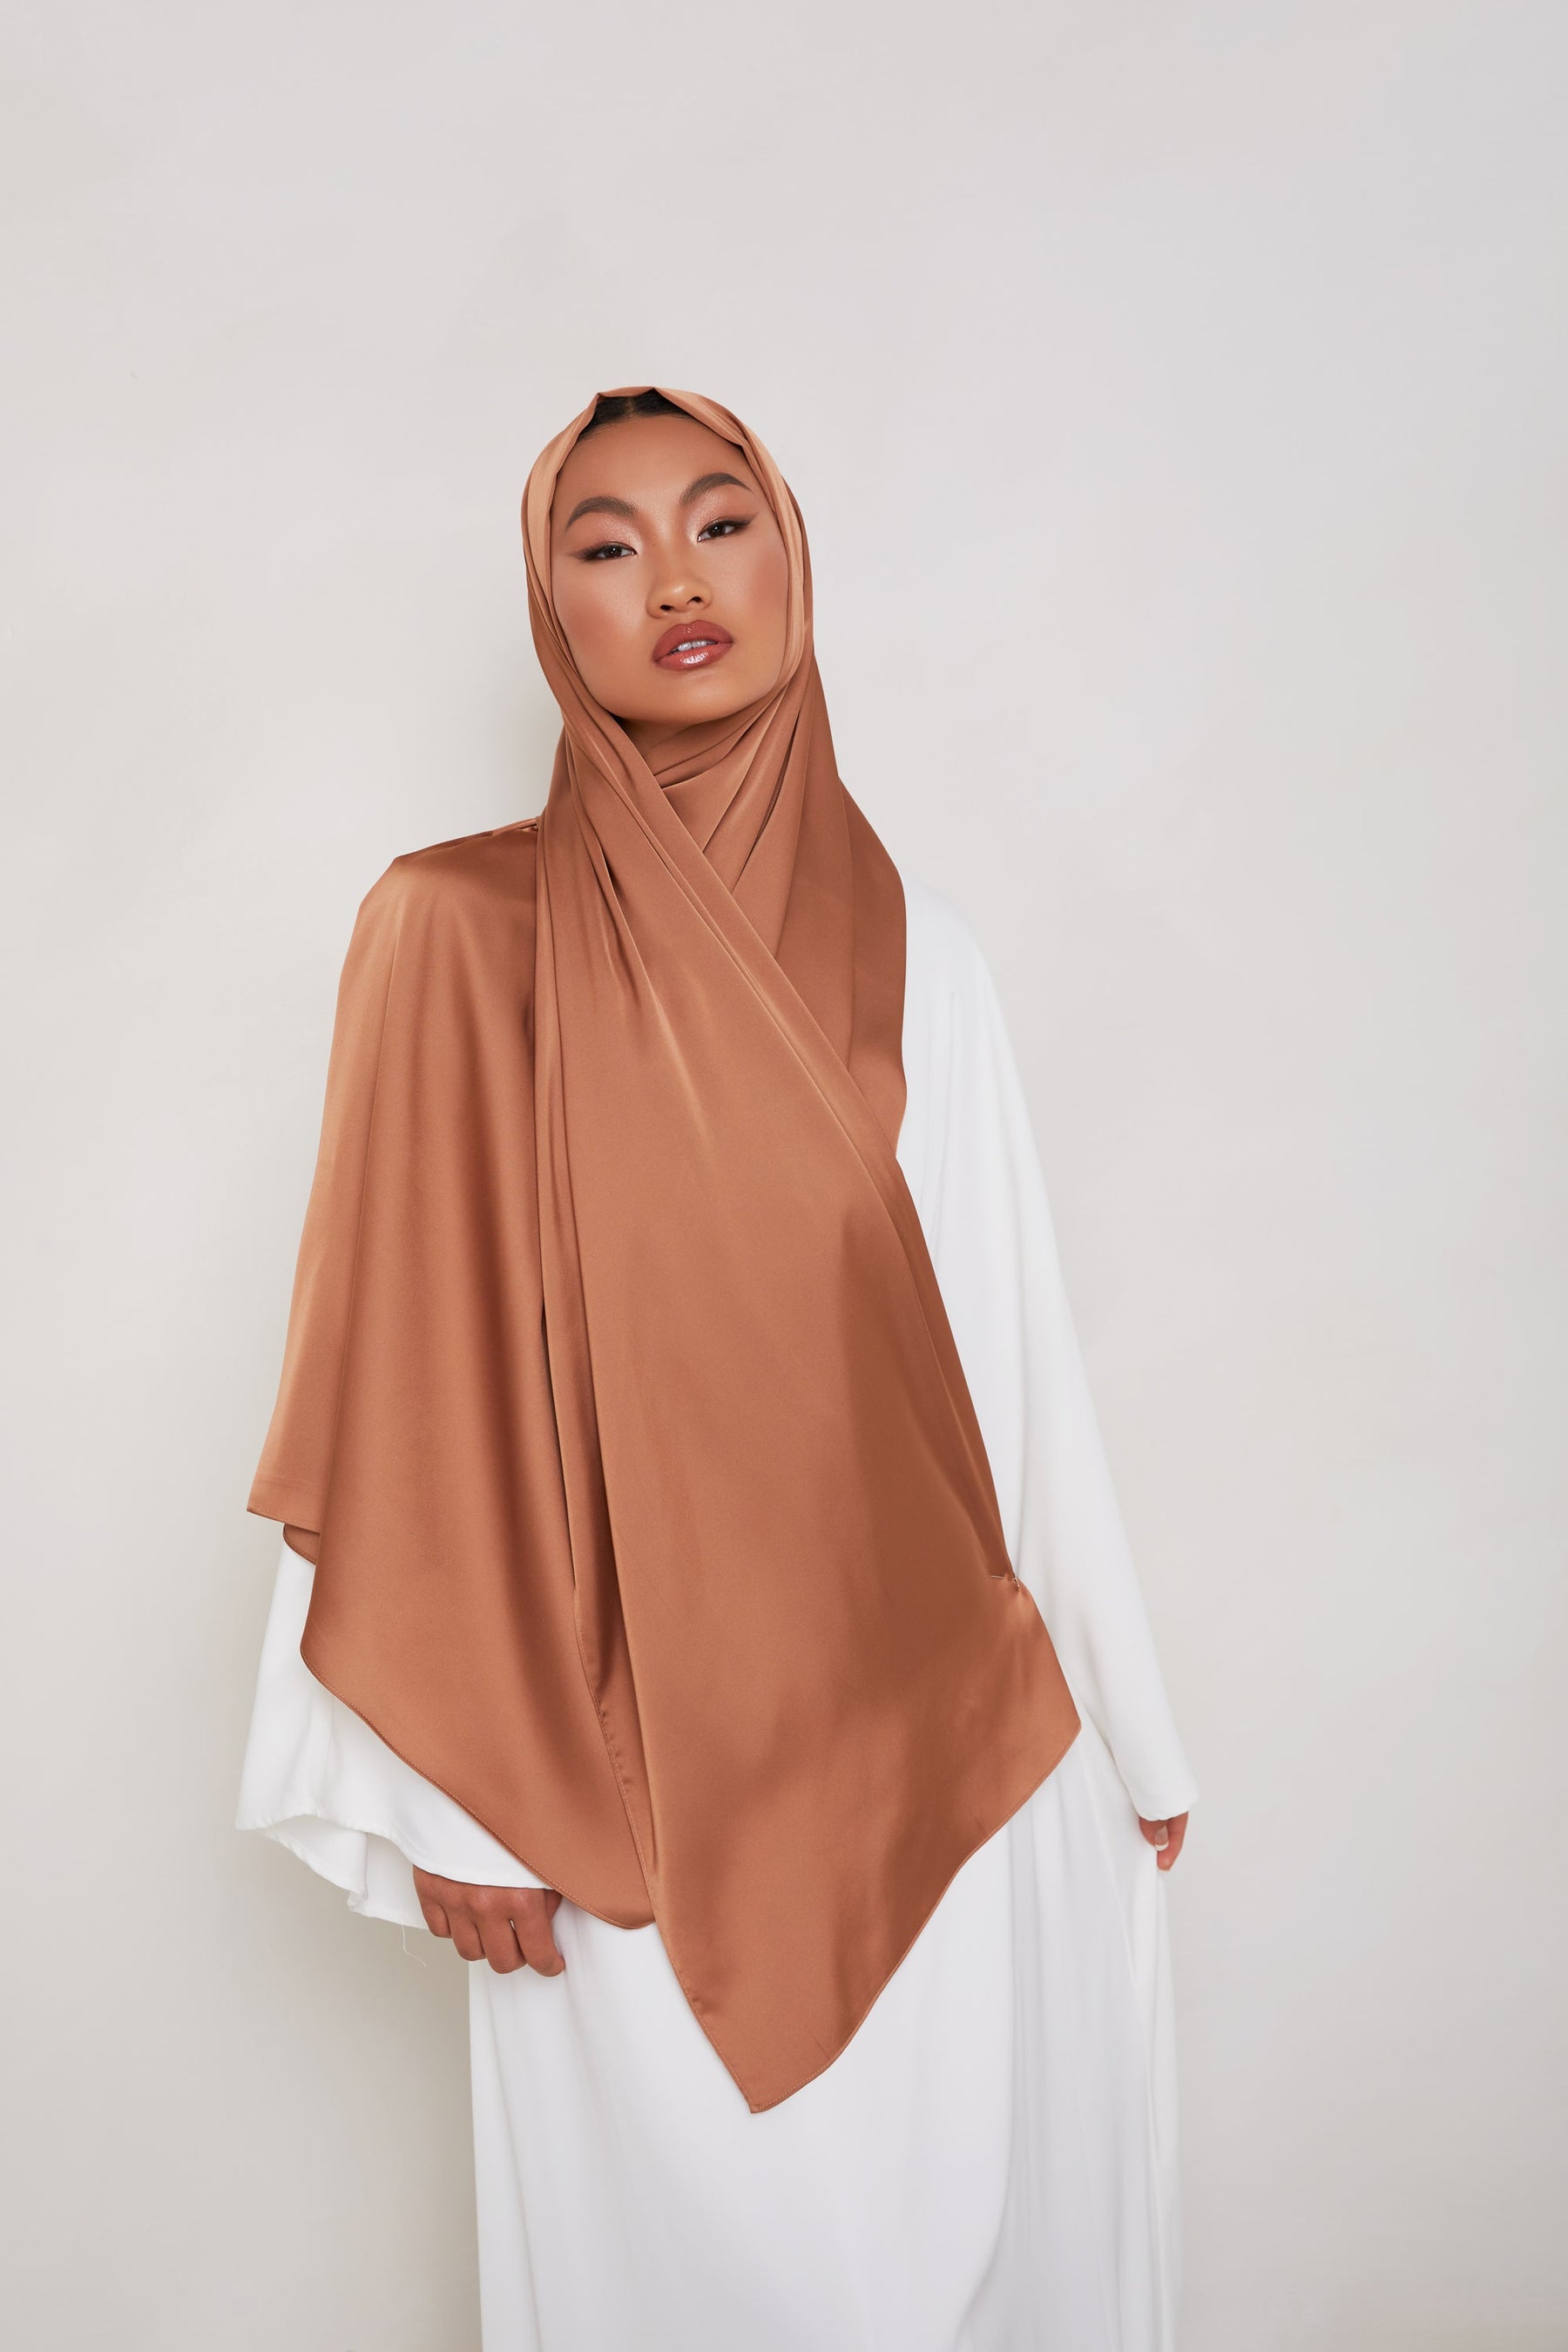 SMOOTH Satin Hijab - Minimal Veiled Collection 